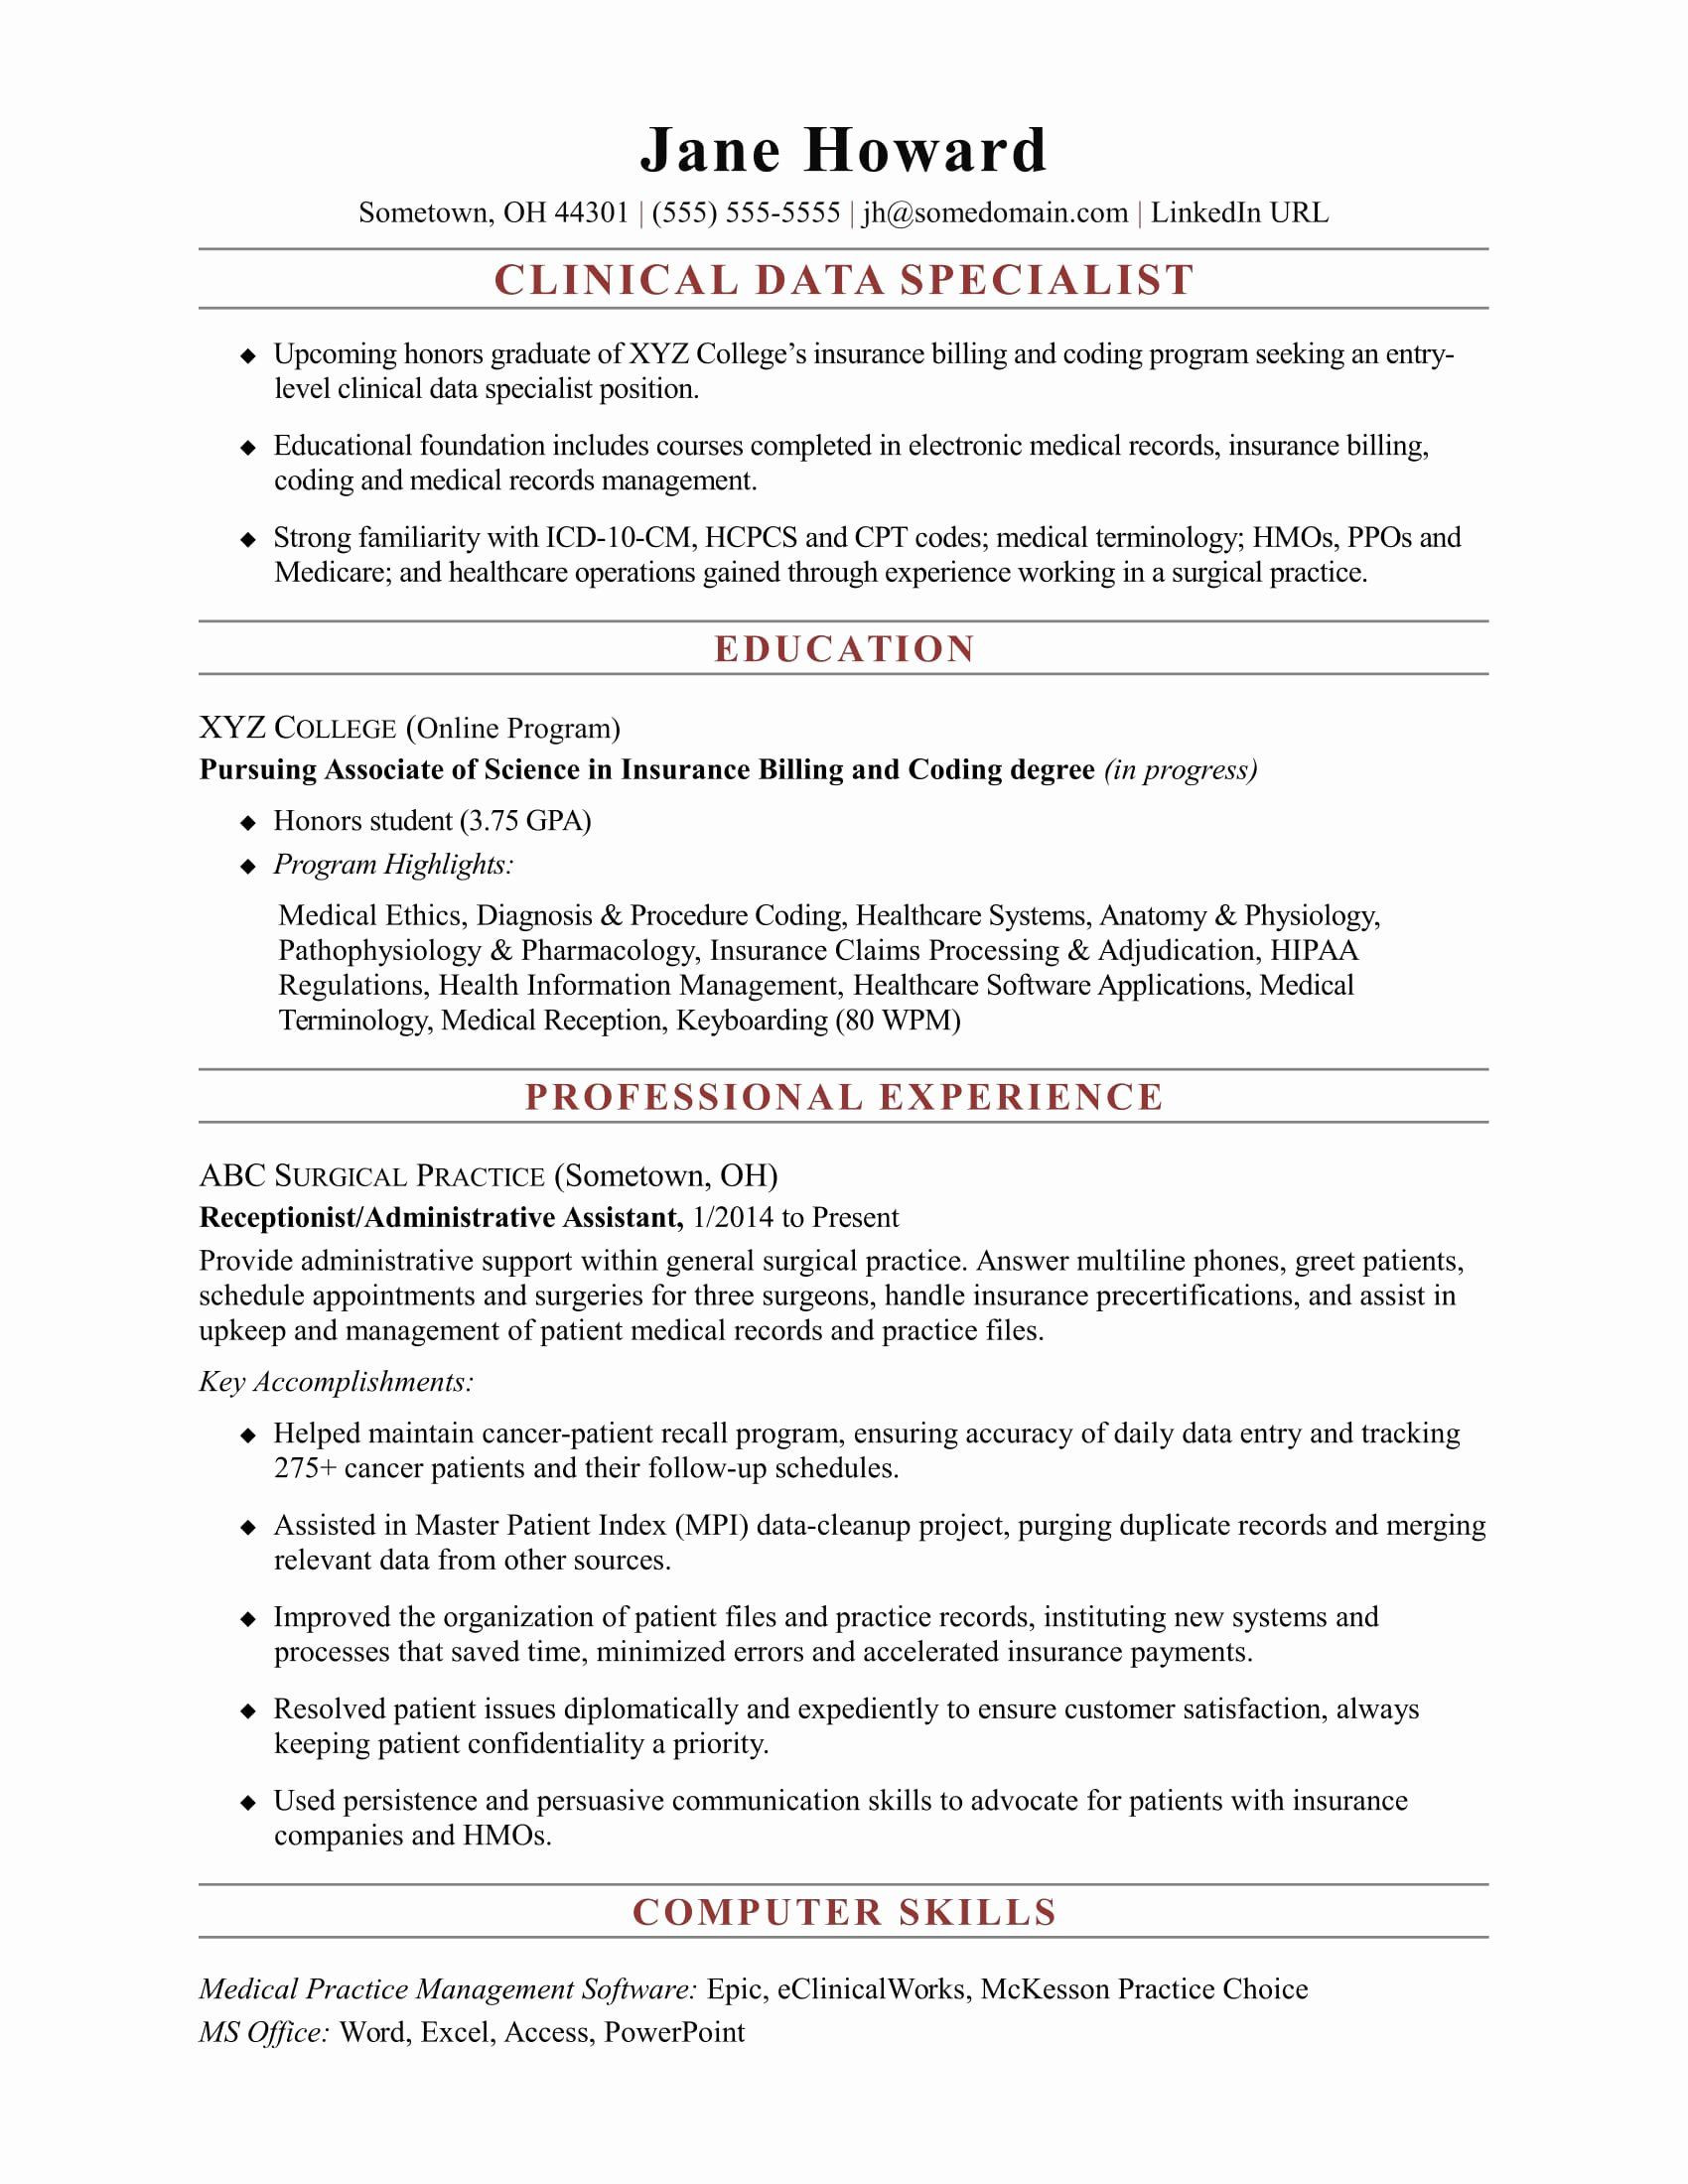 Sample Resume for Entry Level Data Scientist √ 20 Data Scientist Entry Level Resume In 2020